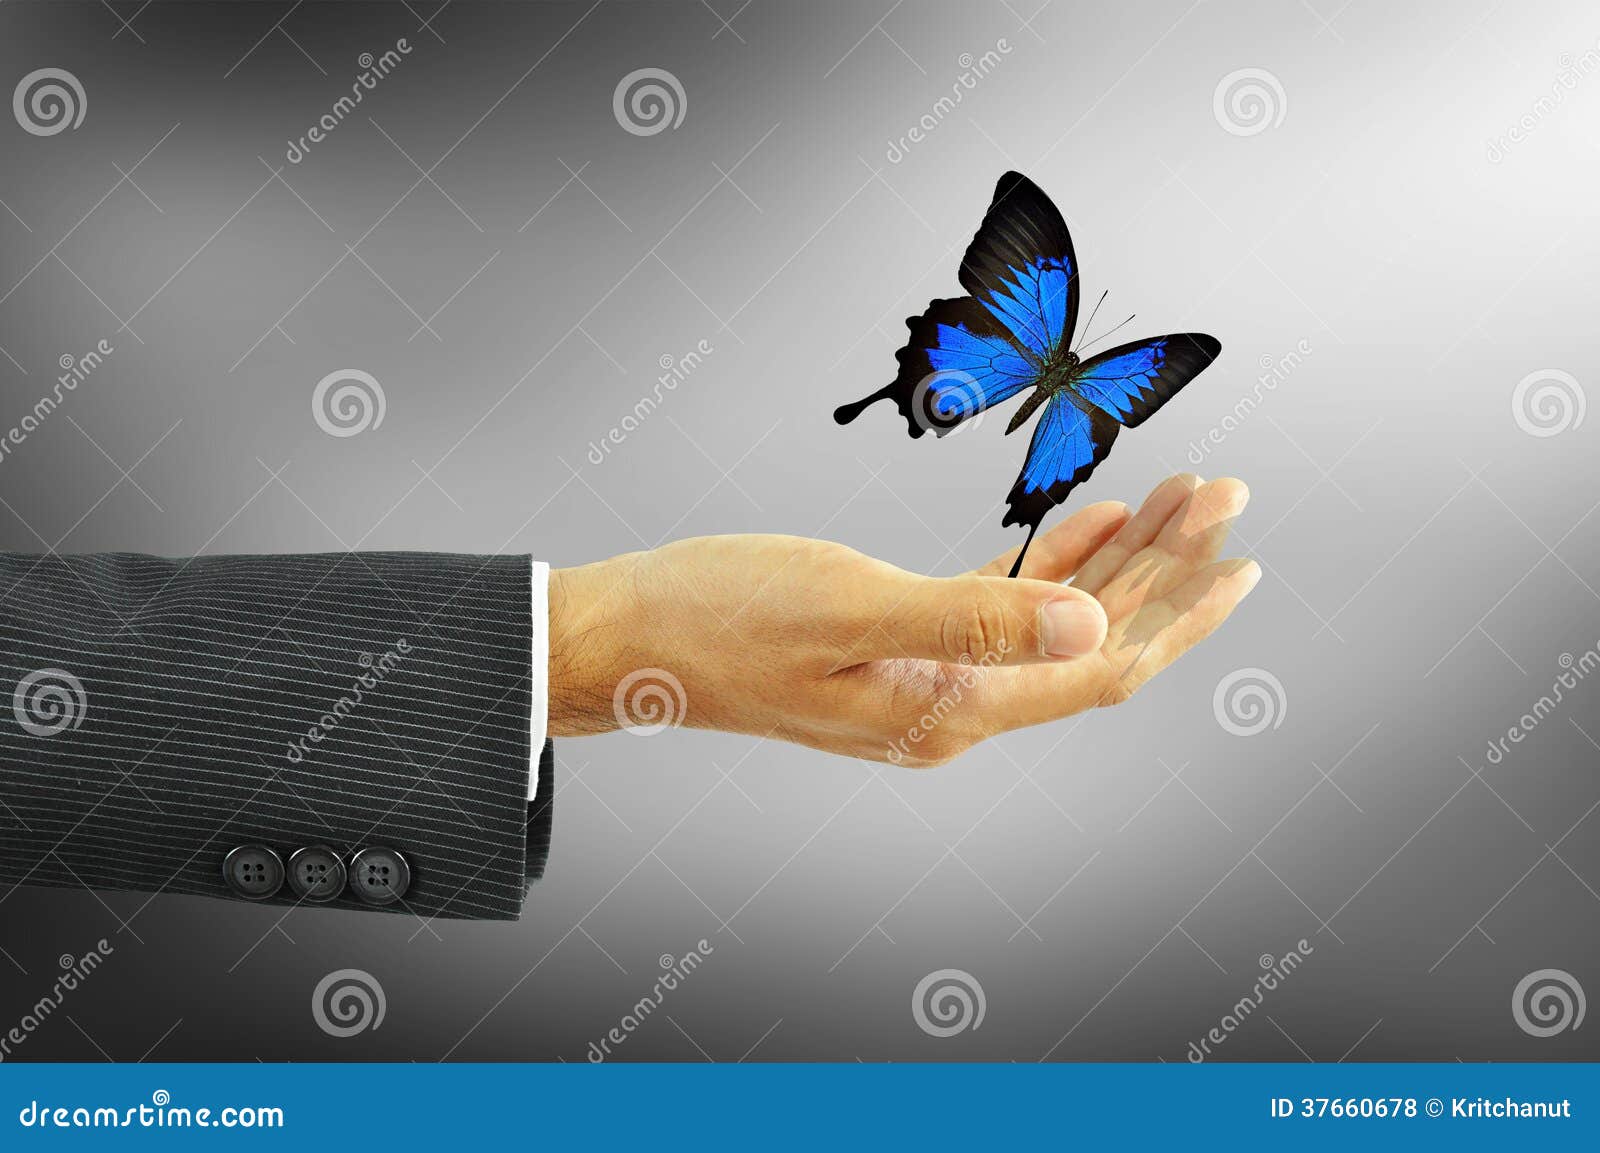 Resultado de imagen para hombre y mariposas